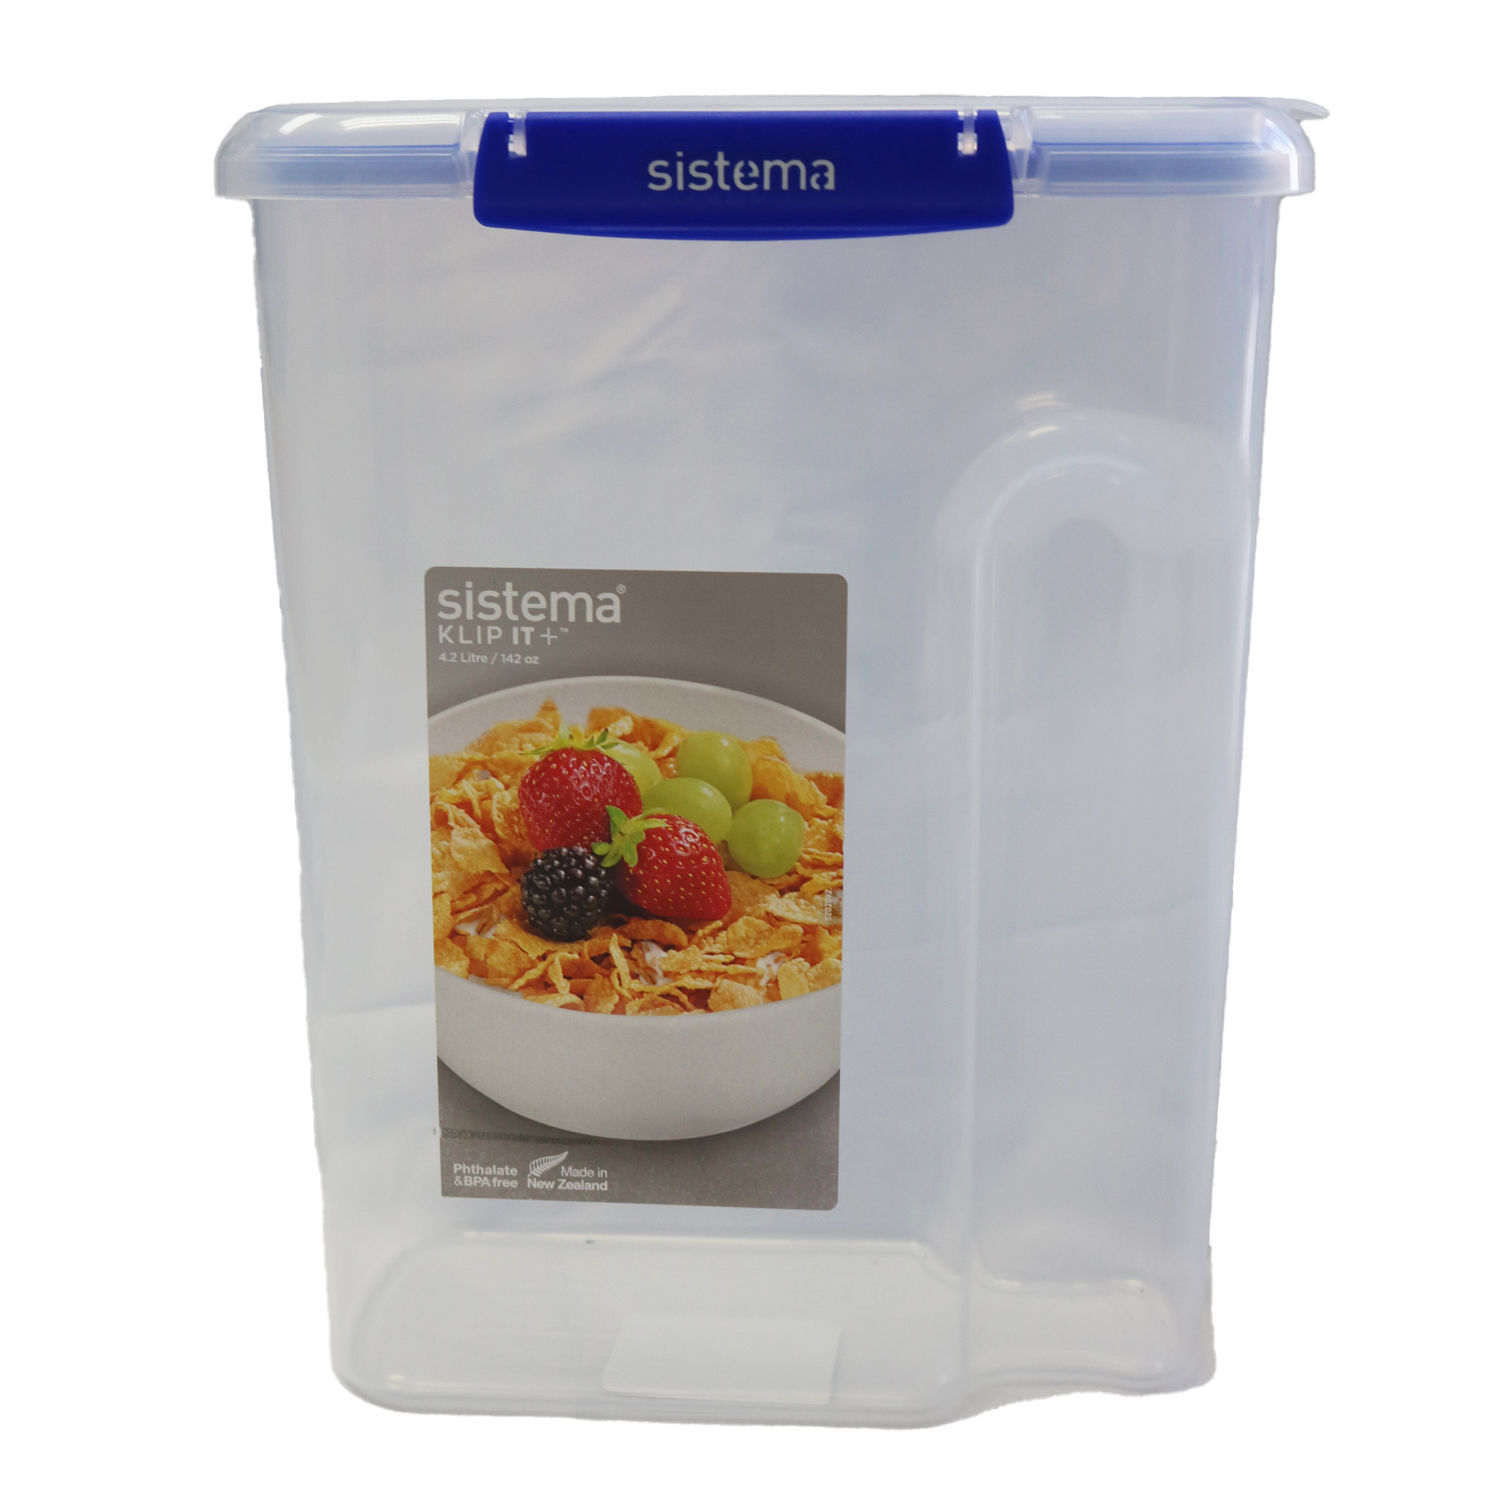 Sistema Klip It + Cereal - boite de céréales - 4.2L